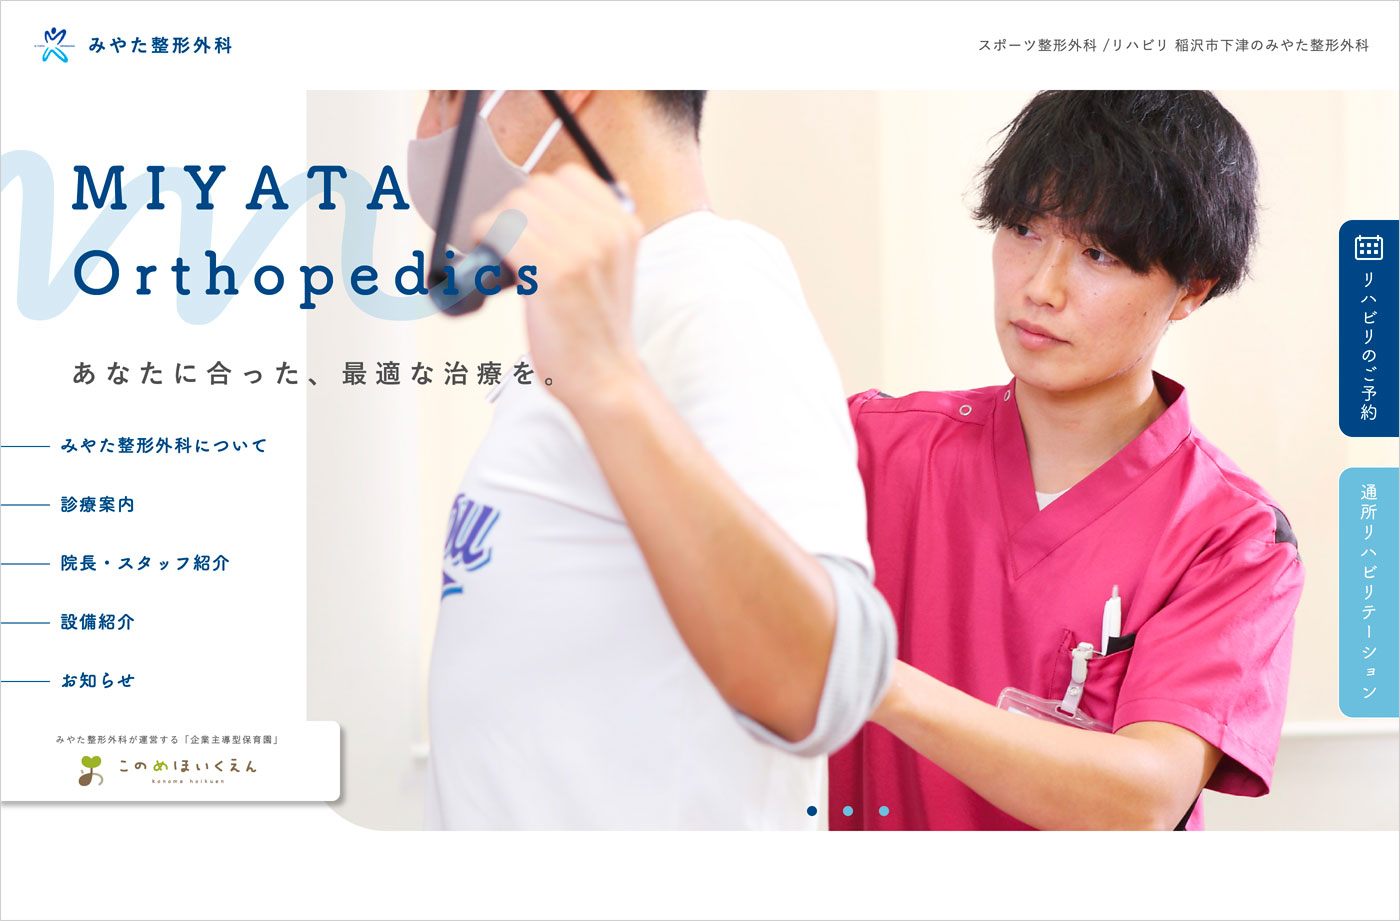 愛知県稲沢市下津のみやた整形外科ウェブサイトの画面キャプチャ画像